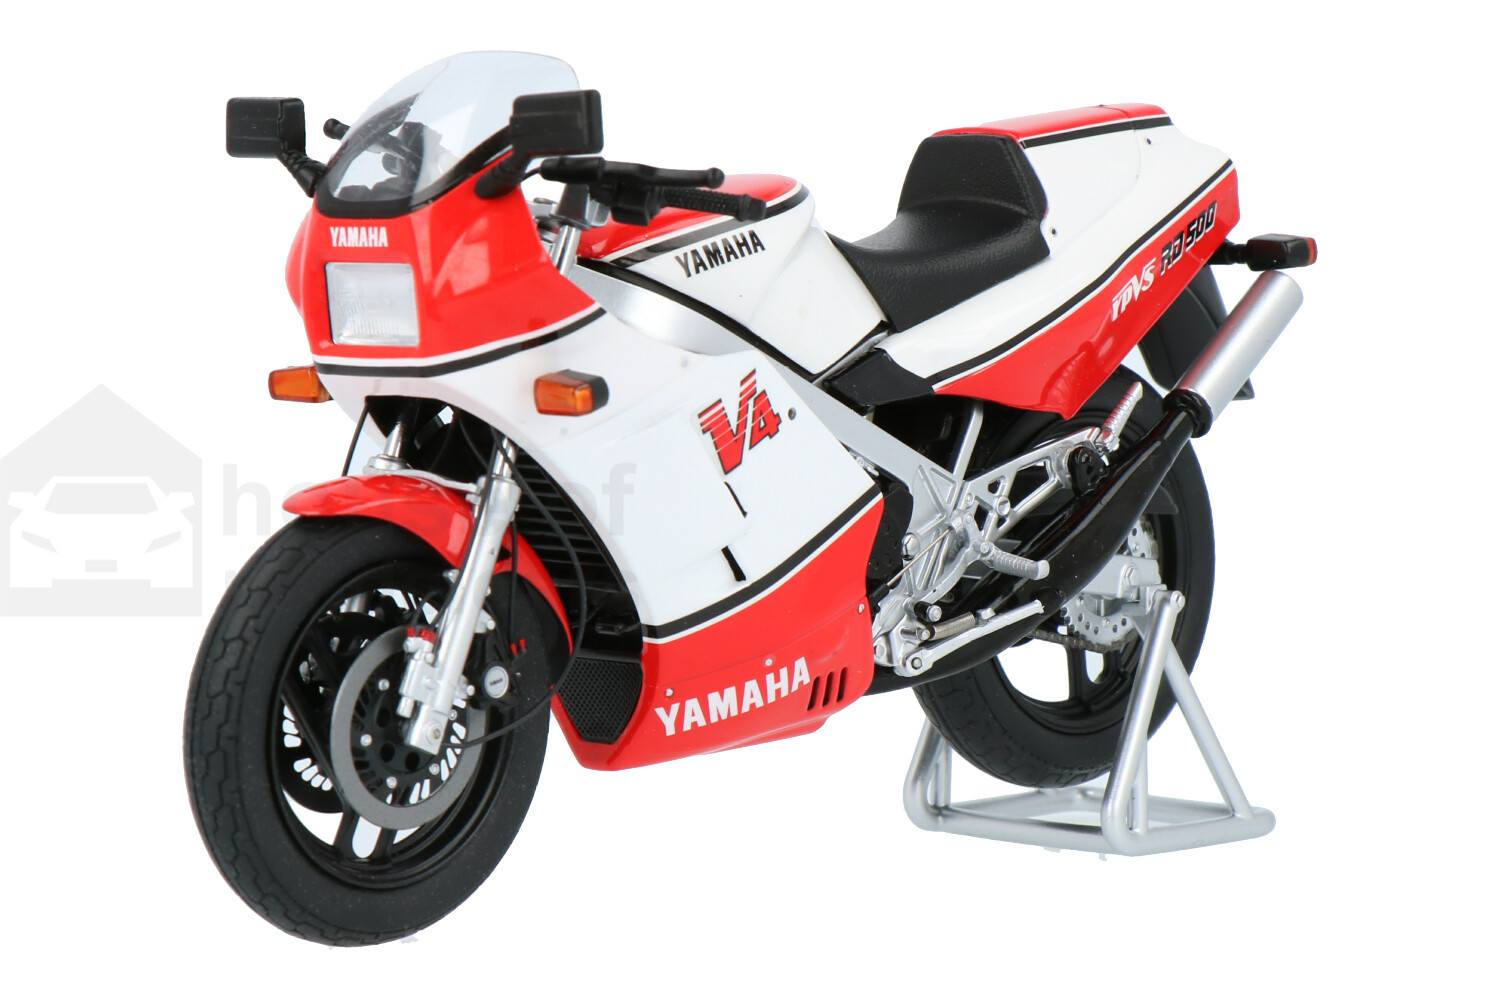 Yamaha-RD500-LC-M12026_13159580006280268-SparkYamaha-RD500-LC-M12026_Houseofmodelcars_.jpg